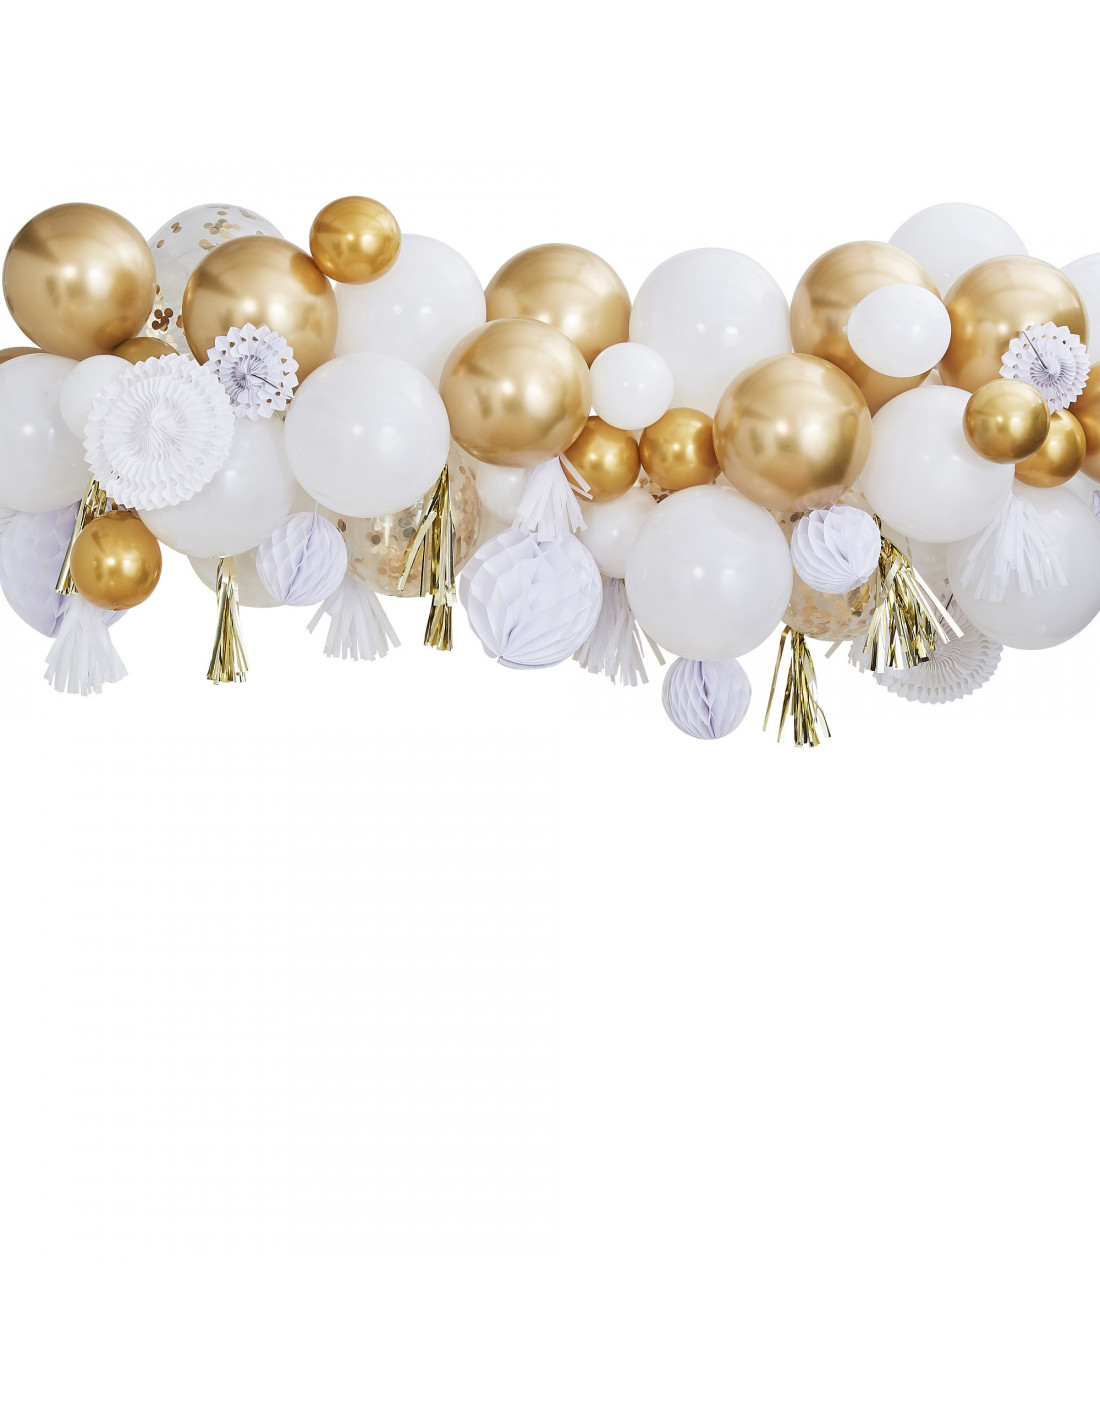 Kit Guirlande Ballons Blancs & Or,Rosaces,Boules Papier - Les